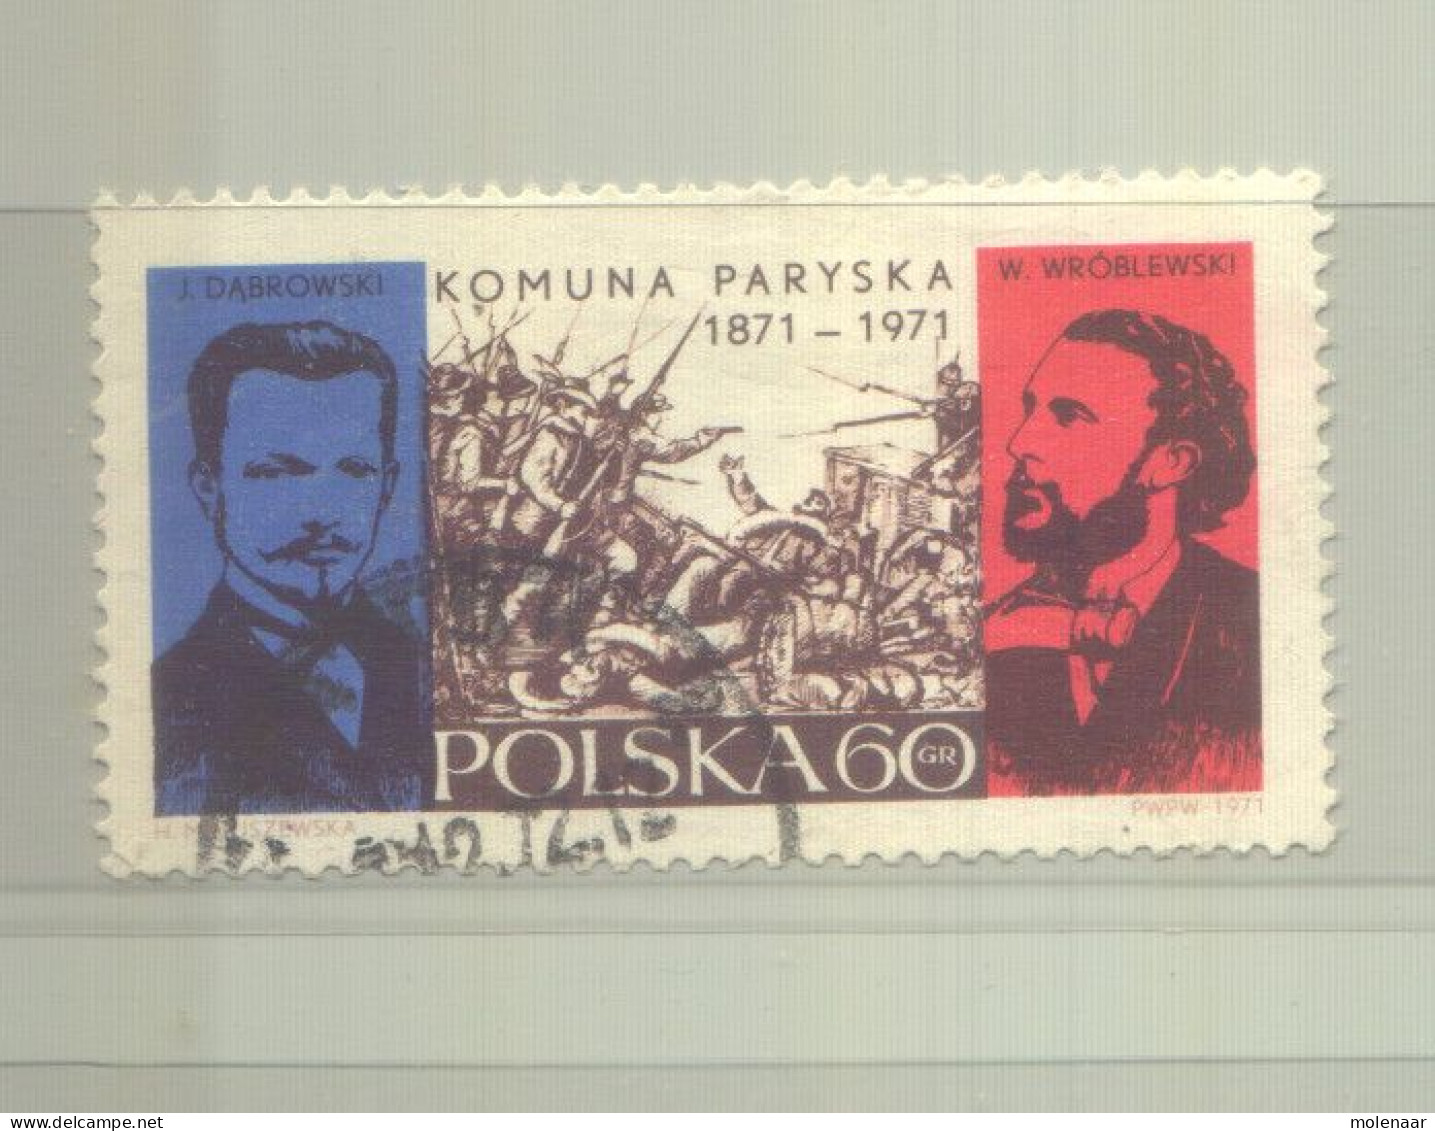 Postzegels > Europa > Polen > 1944-.... Republiek > 1981-90 > Gebruikt 2055 (12191) - Gebruikt